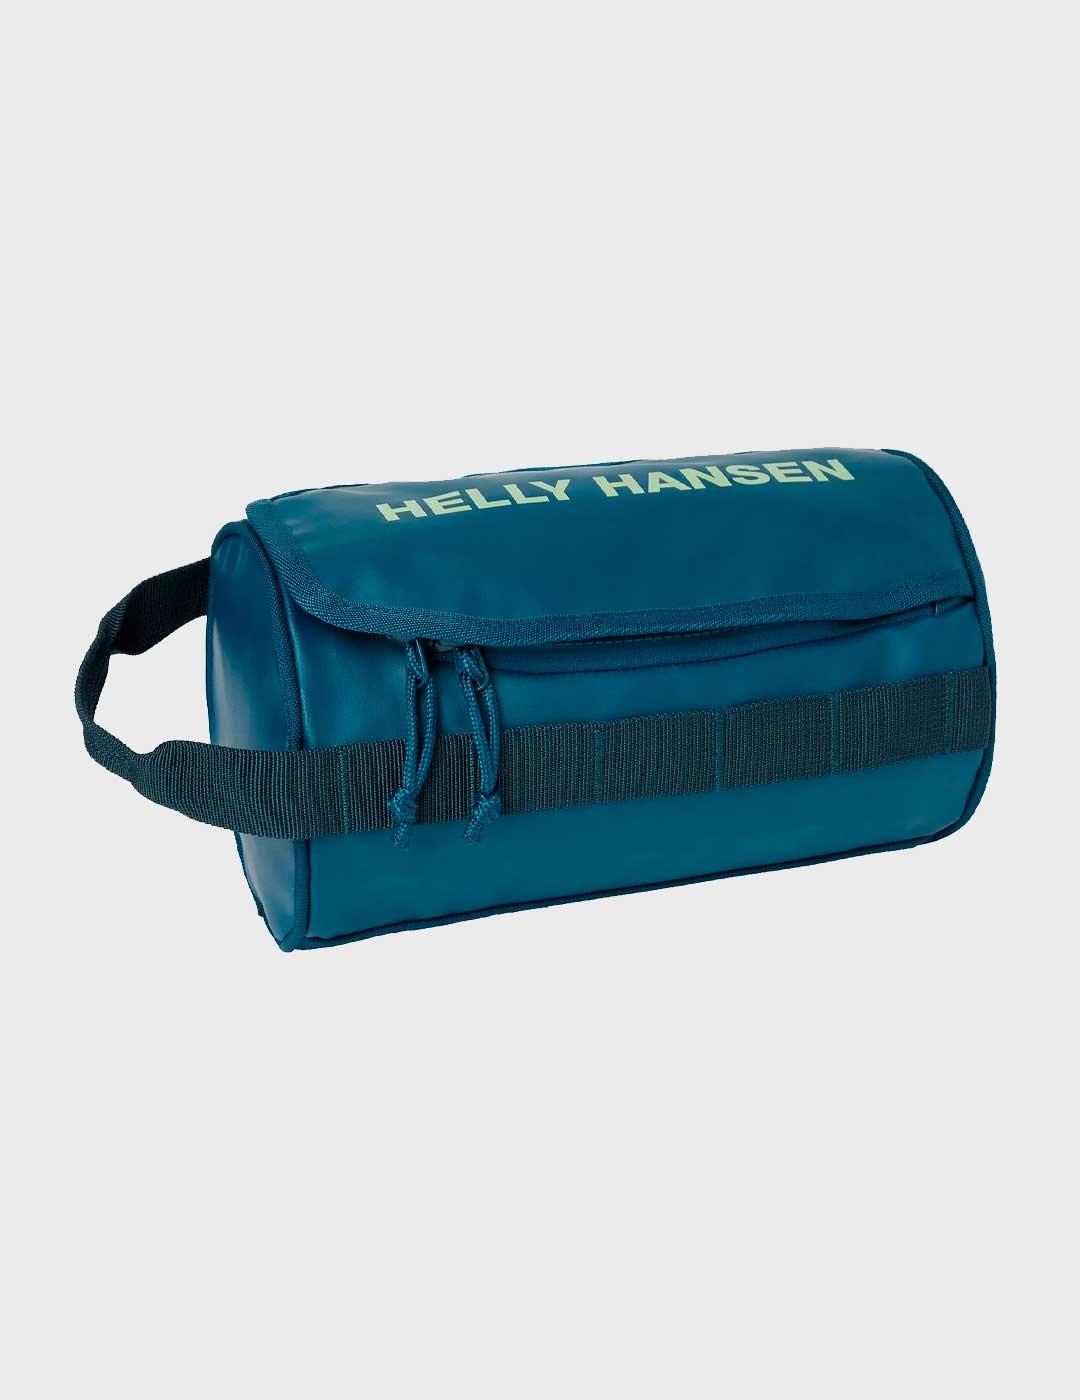 Neceser Helly Hansen Wash Bag 2 azul para hombre y mujer